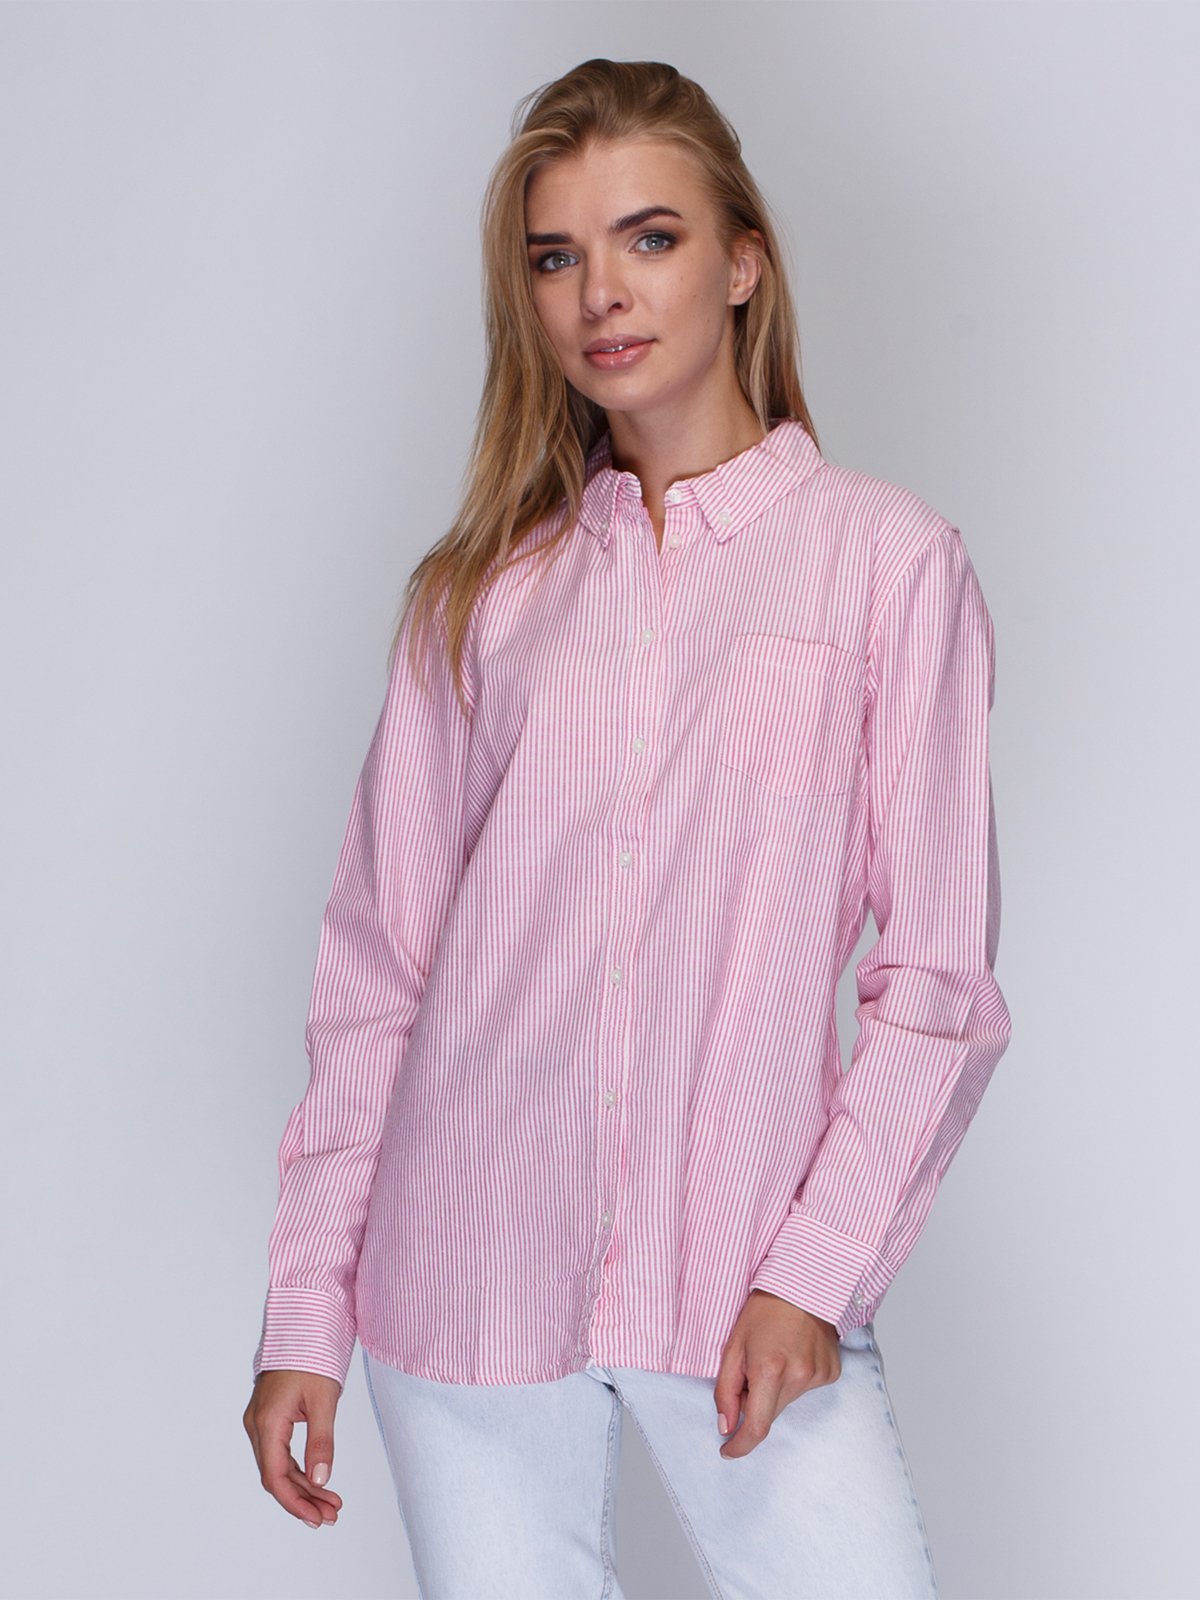 Розовая рубашка в полоску. Розовая рубашка HM. Рубашка в розовую полоску женская. Женская рубашка в розовую полосочку.